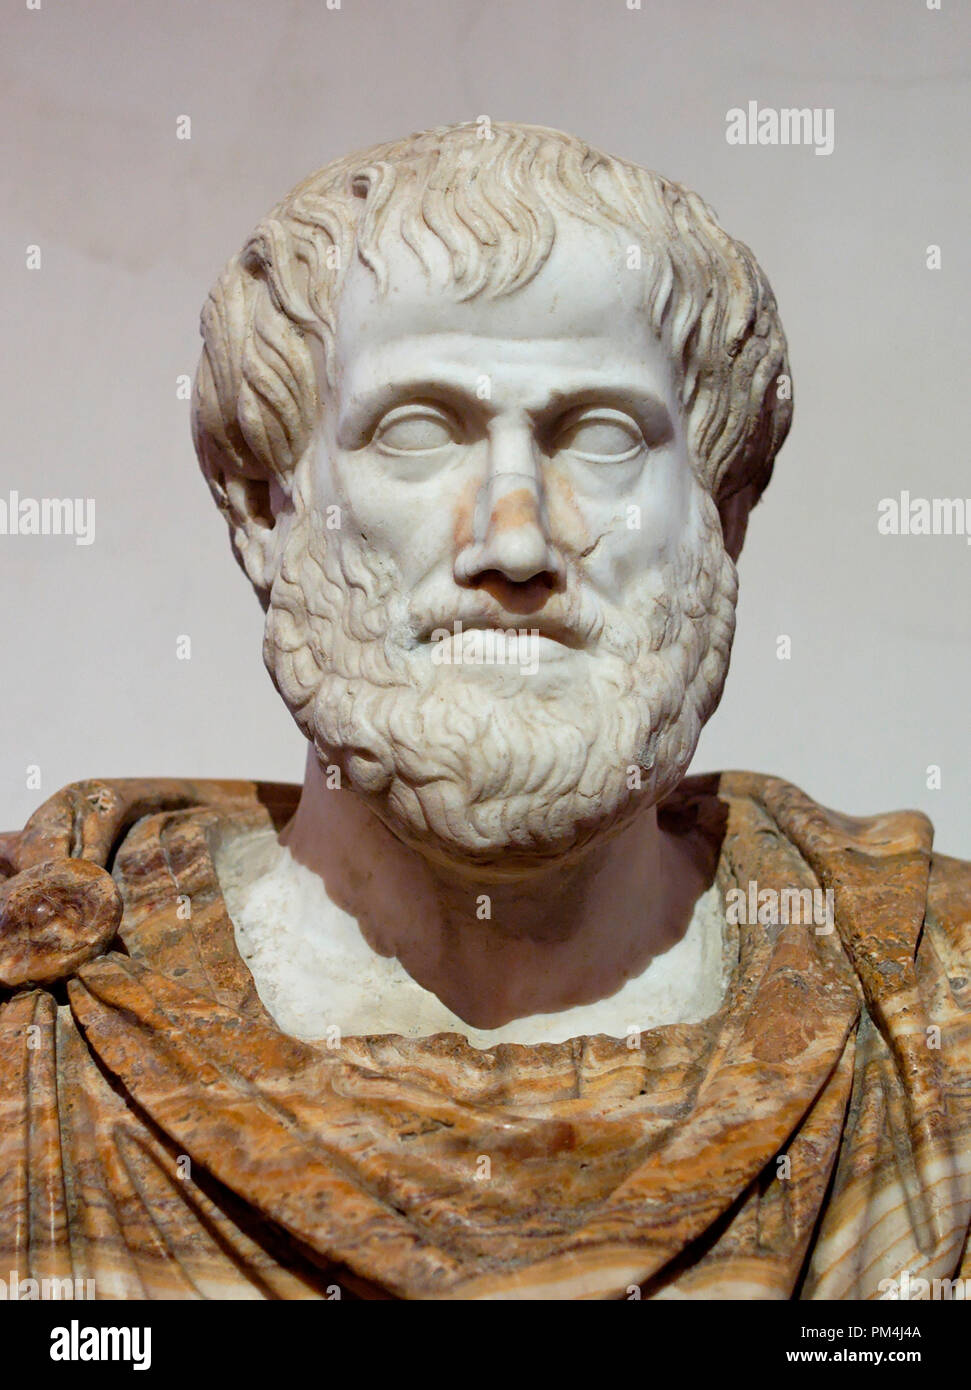 Busto de Aristóteles. Mármol, copia romana después de un bronce griego original por Lysippos desde 330 AC. Busto se encuentra actualmente en el Museo Nacional Romano, Roma Italia Archivo de referencia # 1003 515tha Foto de stock